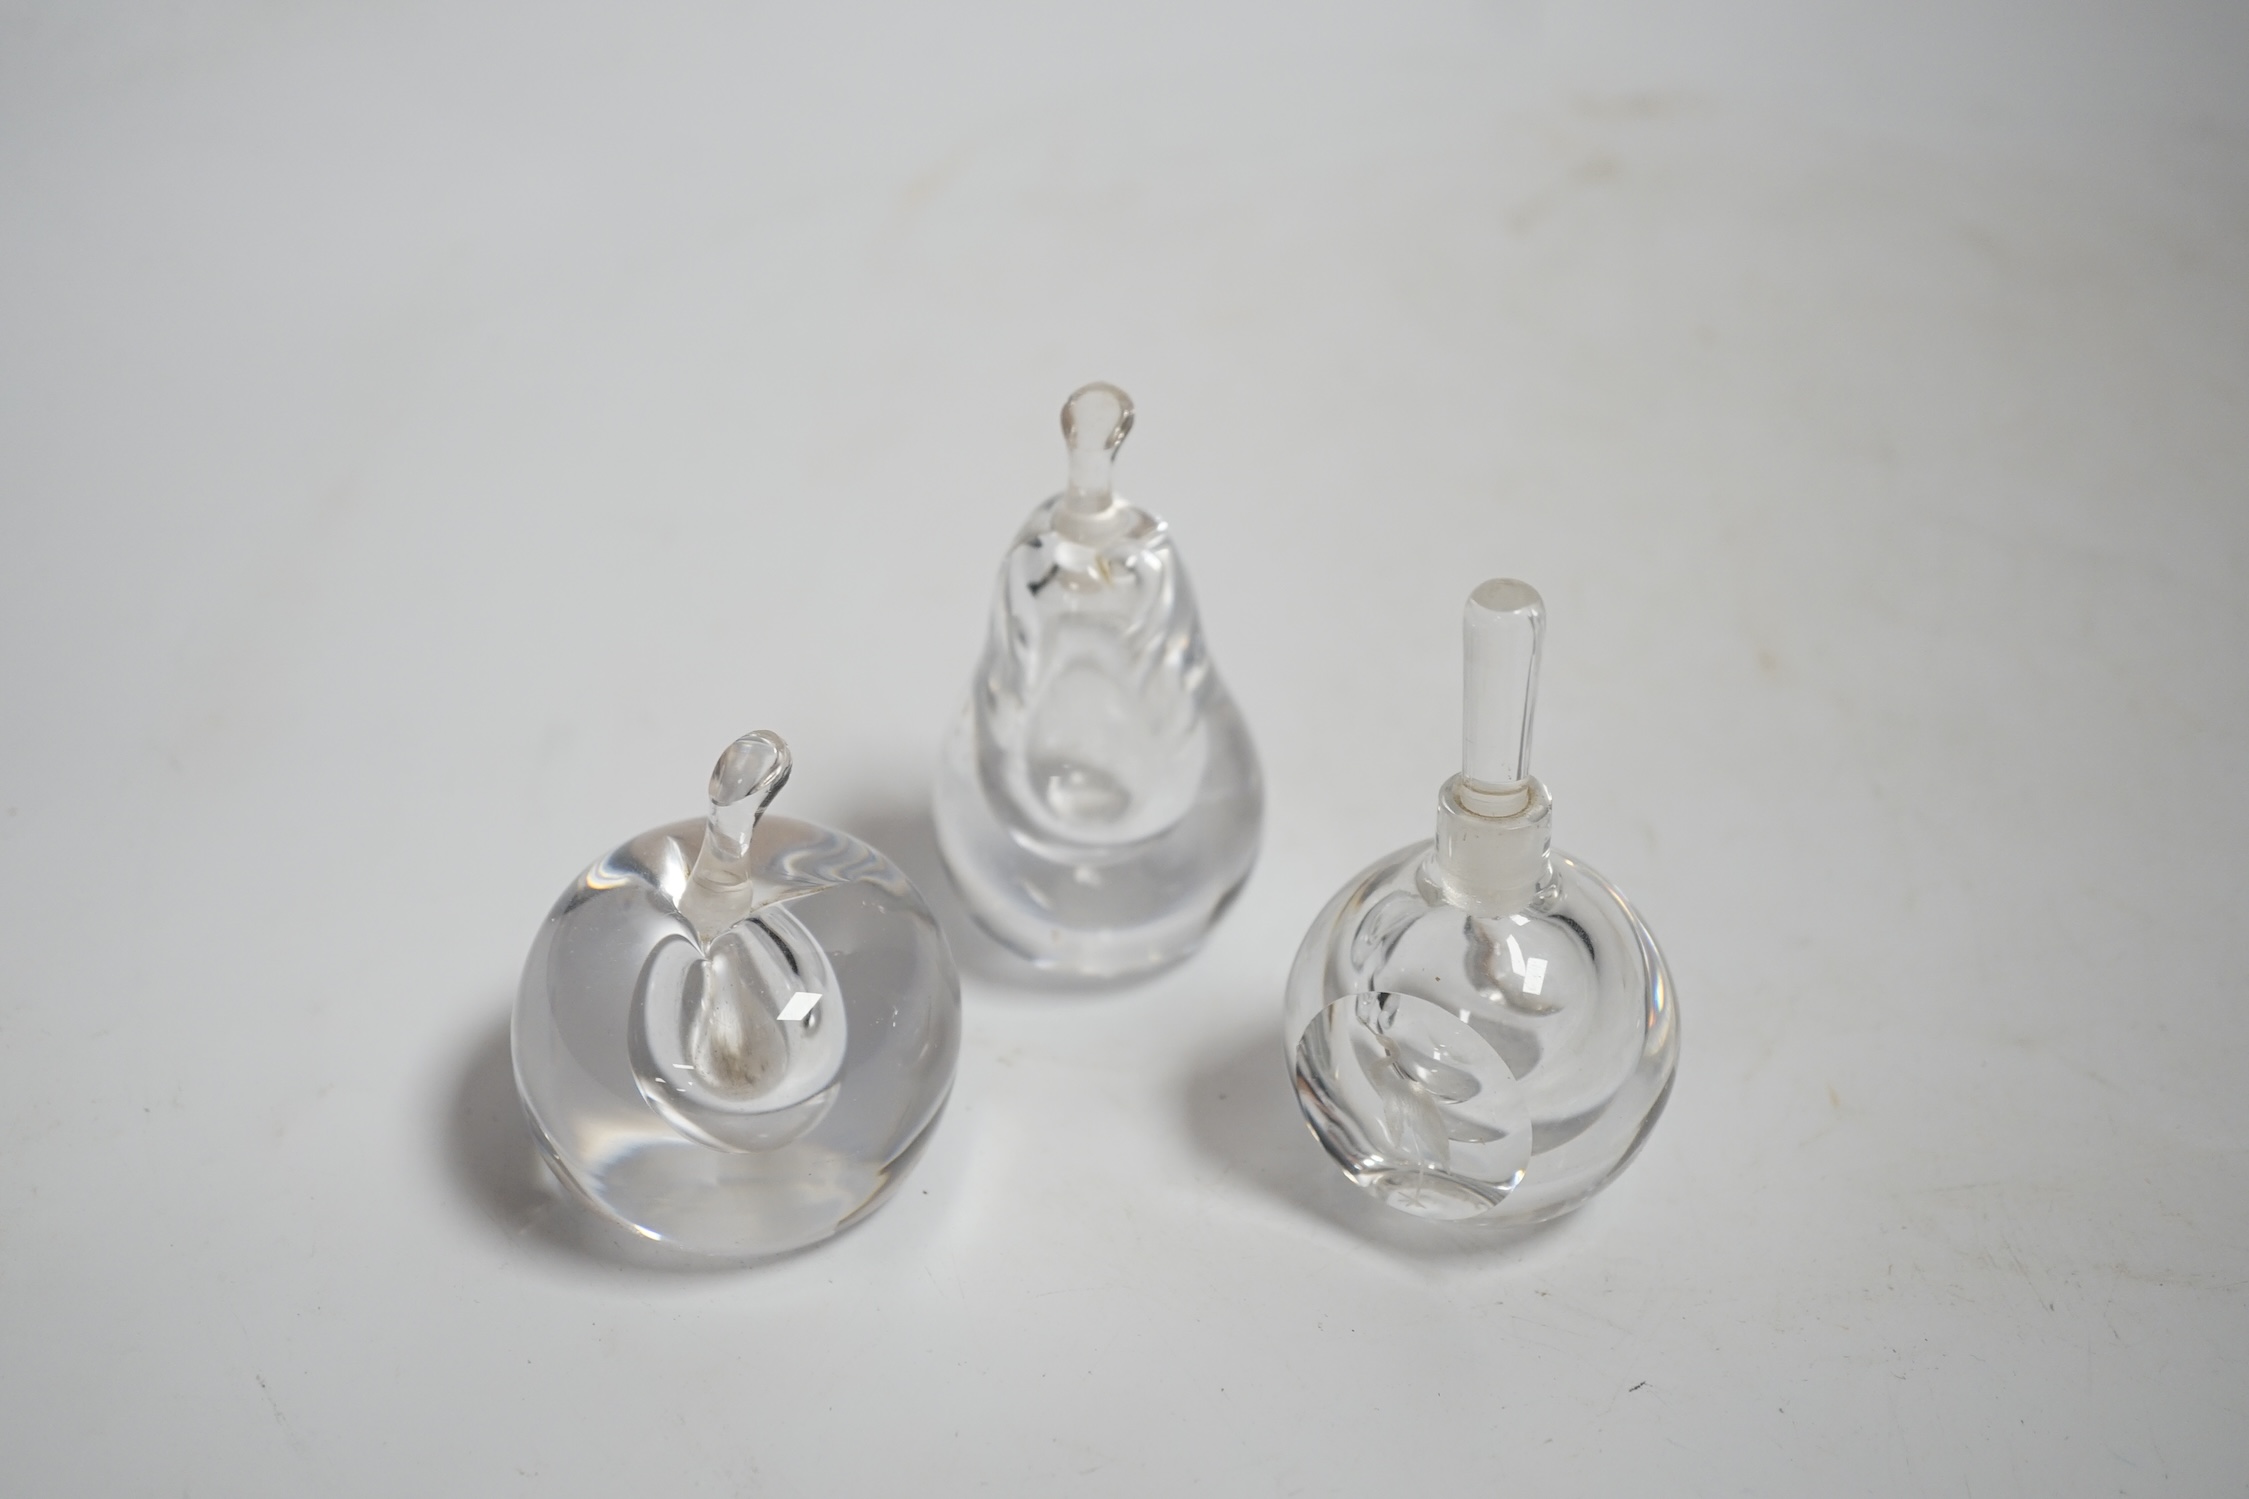 Three Vicke Lindstrand for Kosta Boda glass perfume bottles, tallest 7.5cm